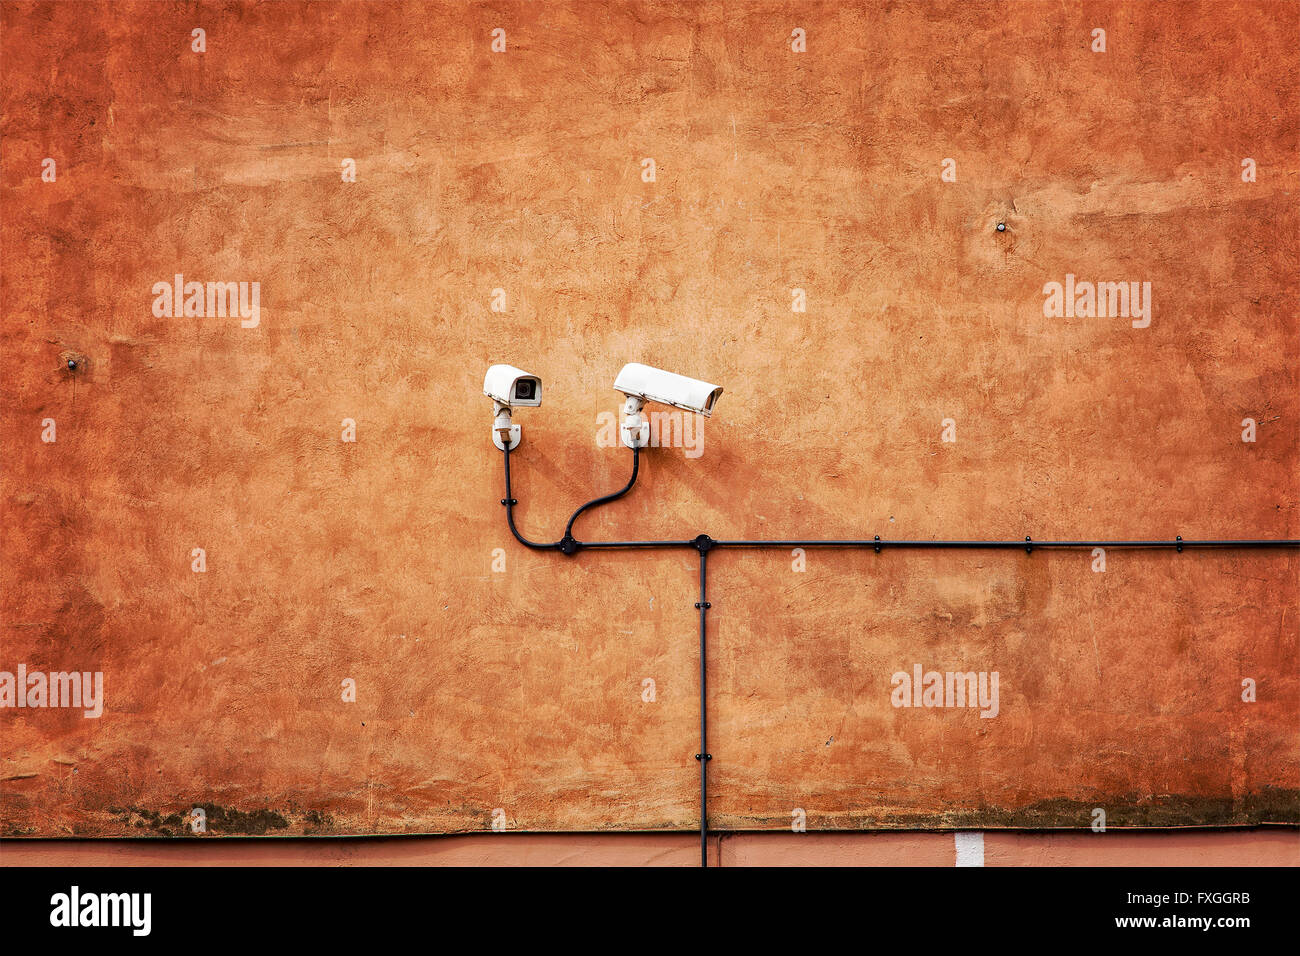 Imagen de cámaras de seguridad en el muro de color naranja. Foto de stock